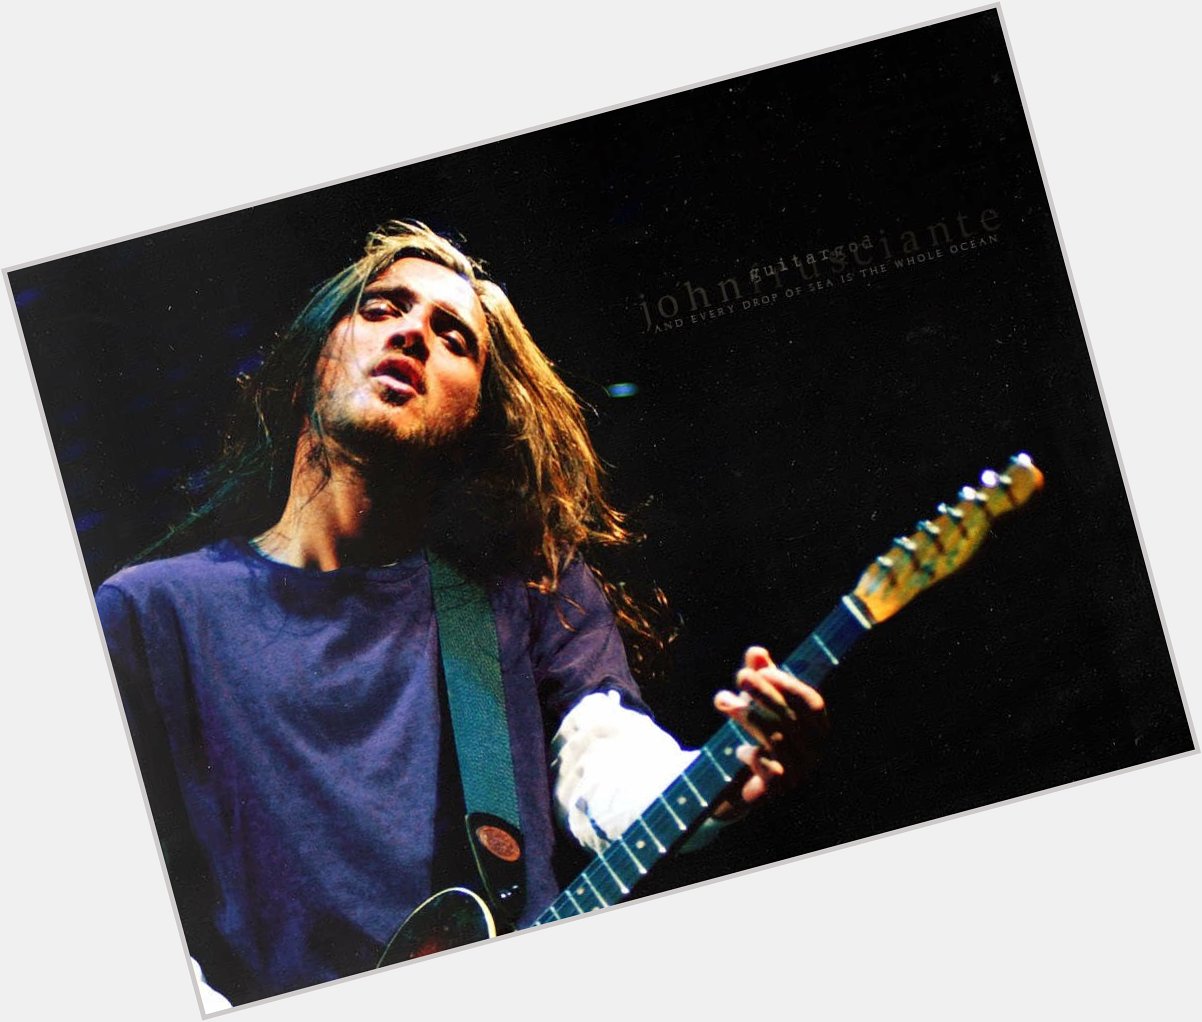 Happy Birthday John Frusciante
I love you         